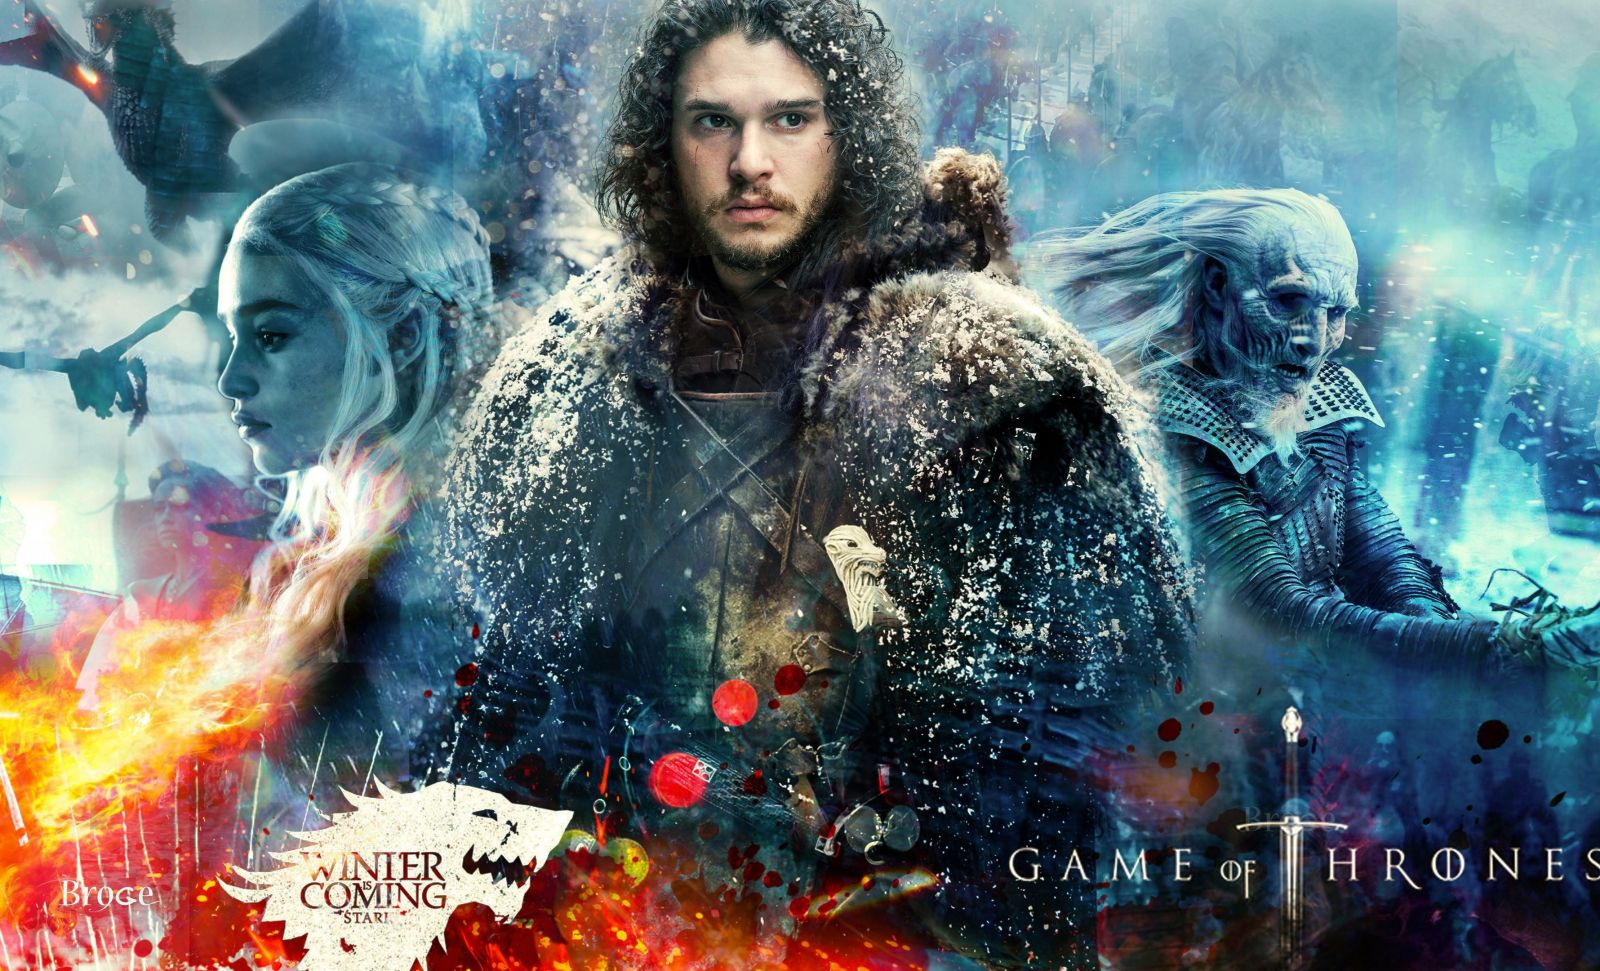 Ya faltan pocos días para el inicio del fin de Game of Thrones | La Portada  Canadá